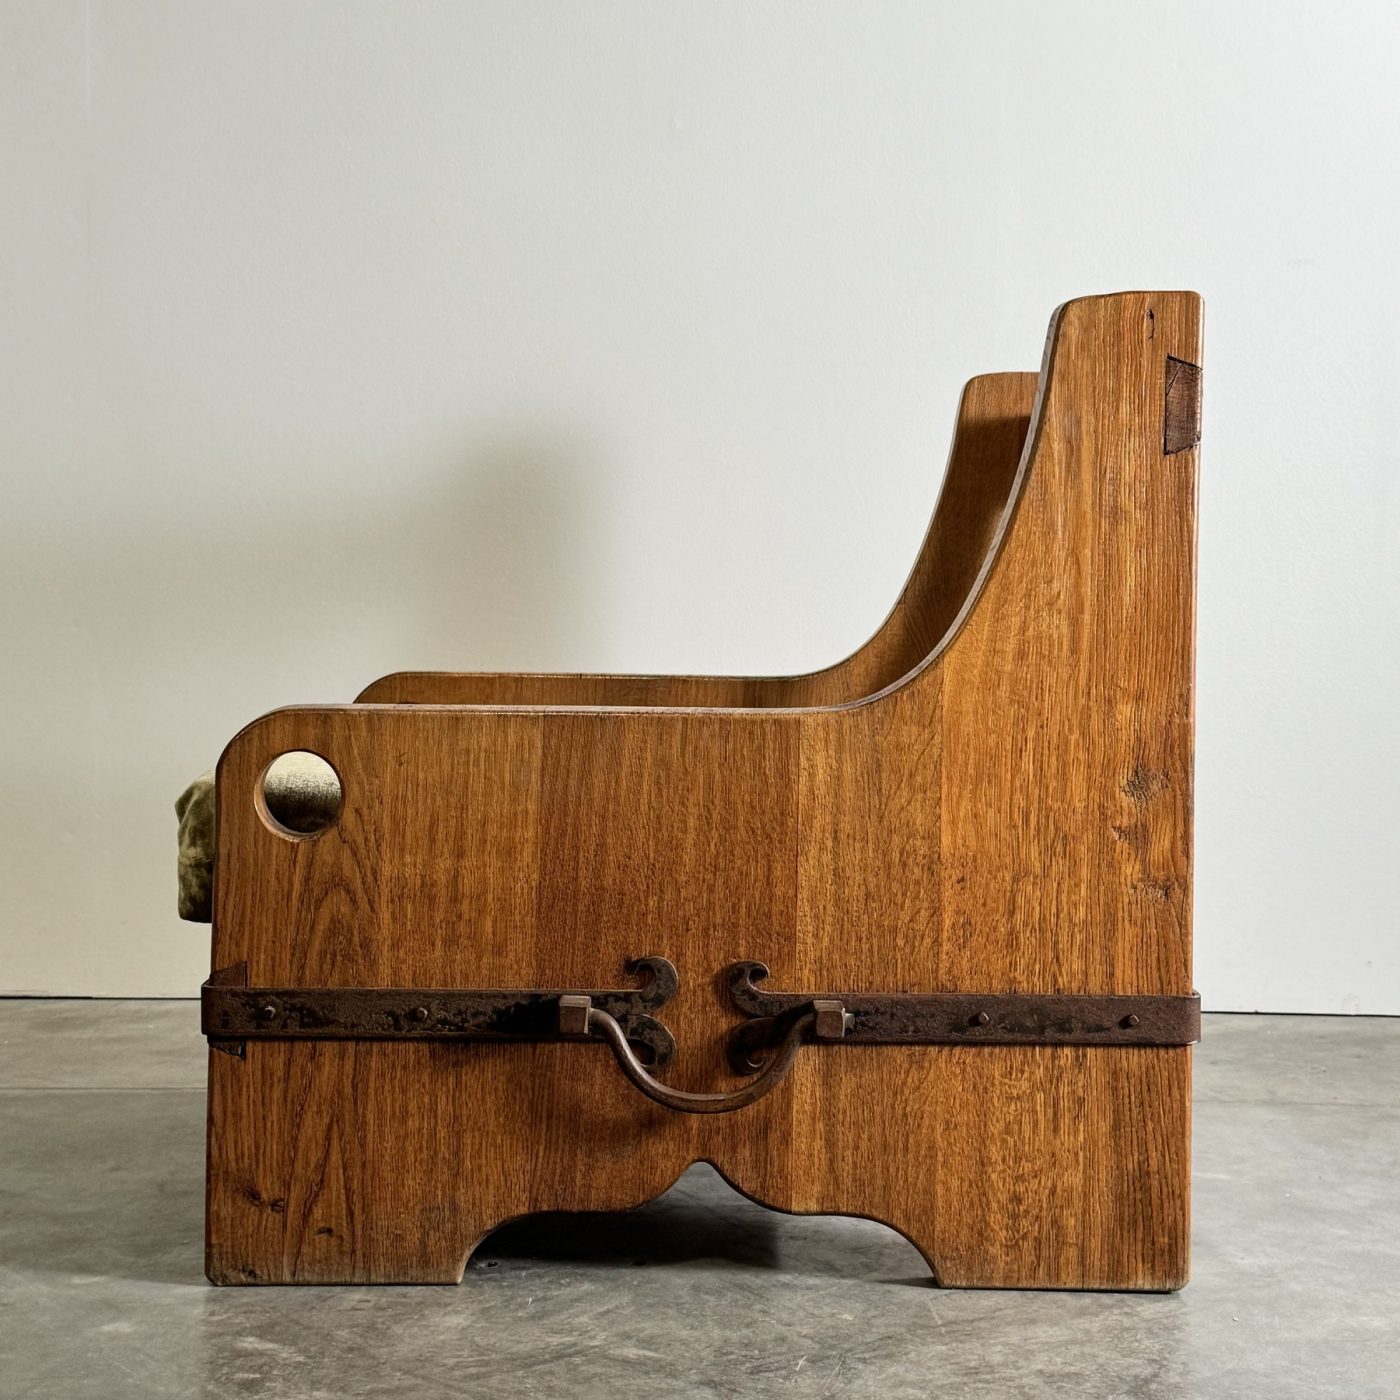 objet-vagabond-oak-armchairs0001